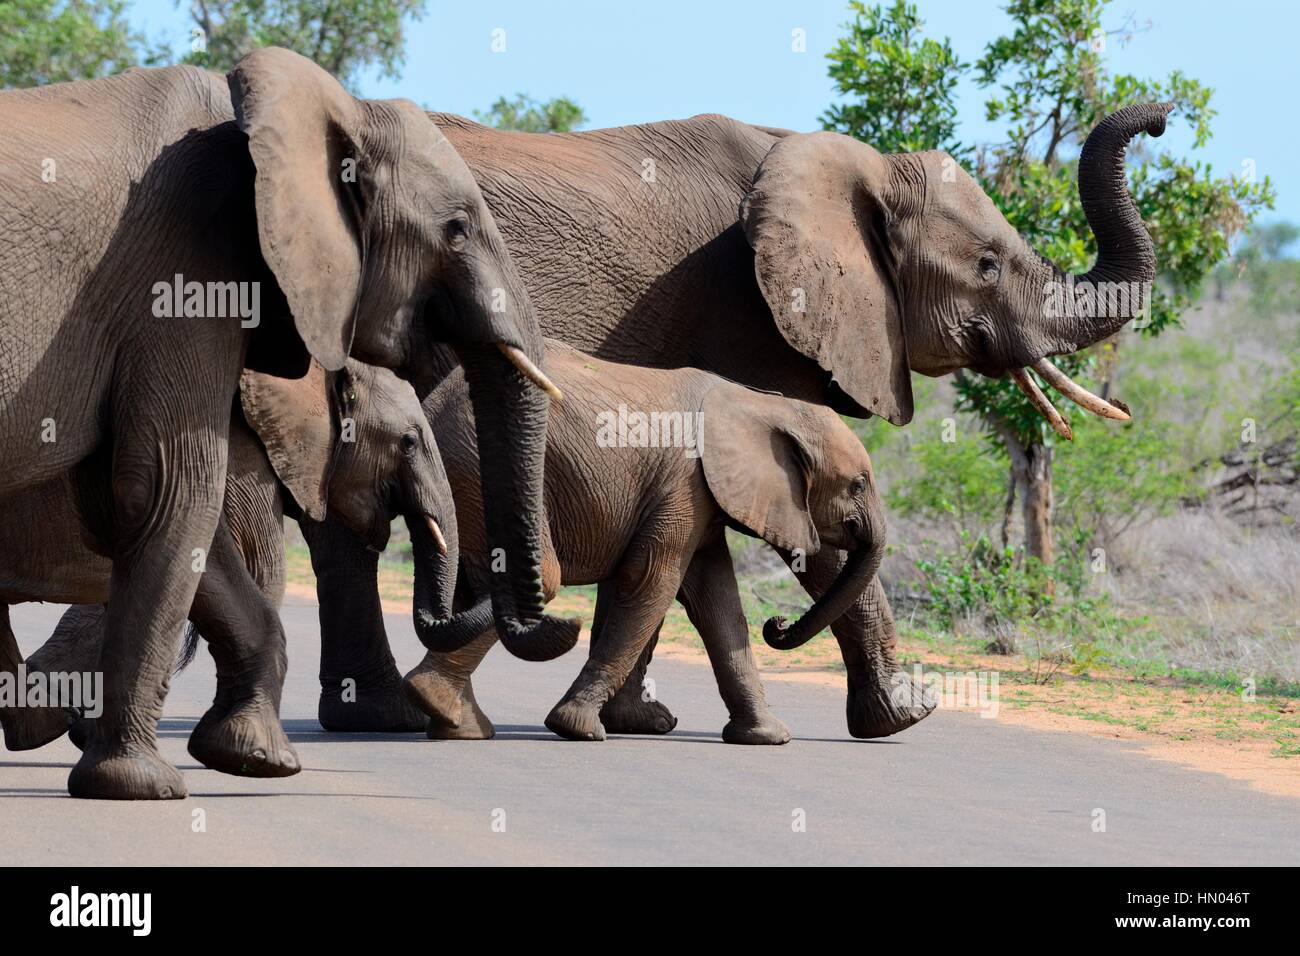 Afrikanischen Bush Elefanten (Loxodonta Africana), zwei adulte Weibchen mit zwei jungen, die über eine asphaltierte Straße, Krüger Nationalpark, Südafrika, Afrika Stockfoto